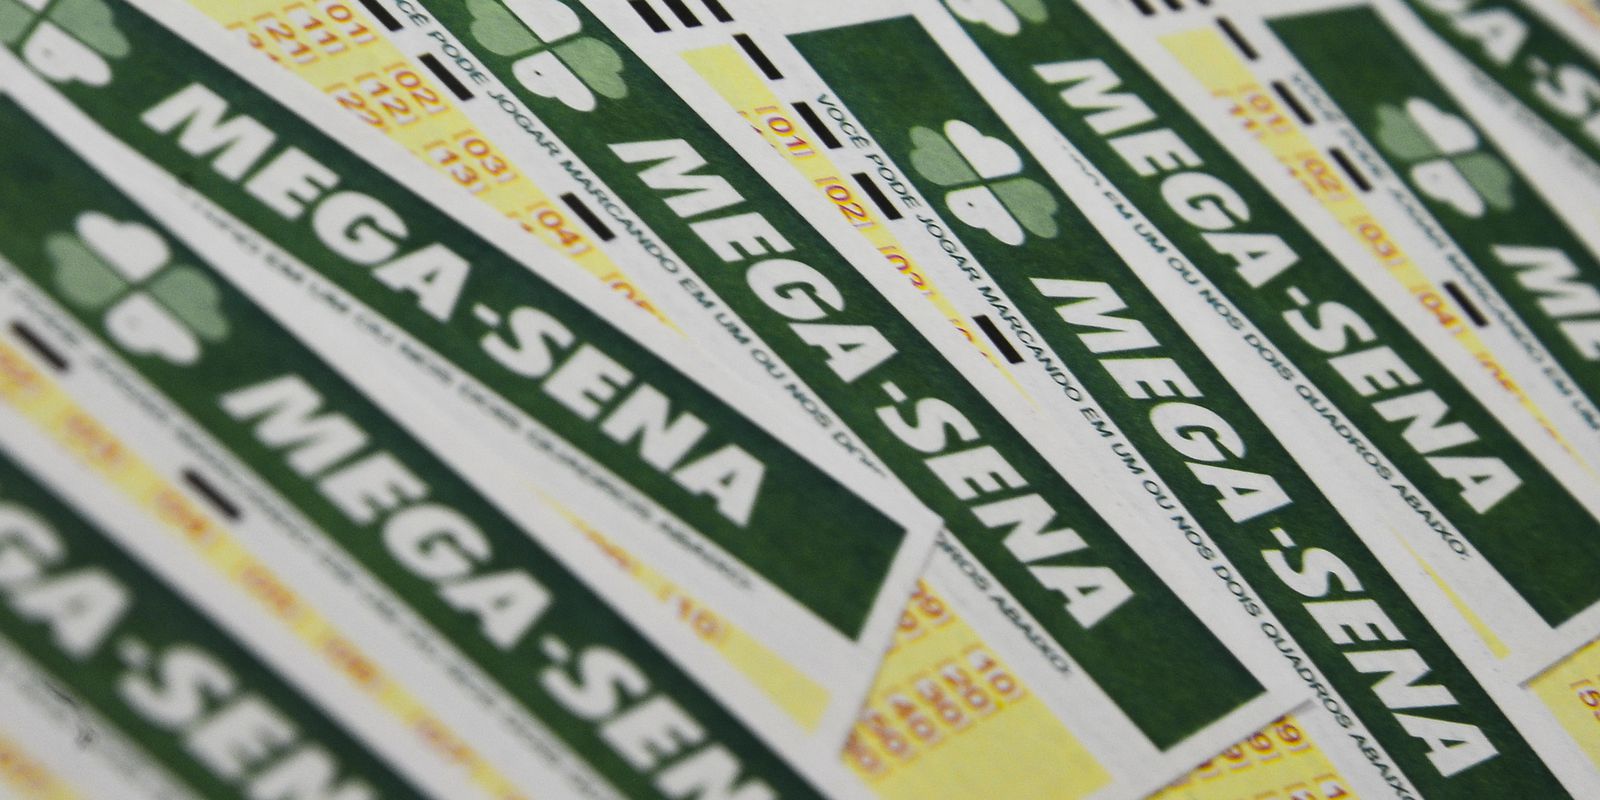 Mega-Sena draws this Wednesday an estimated prize of R$ 27 million